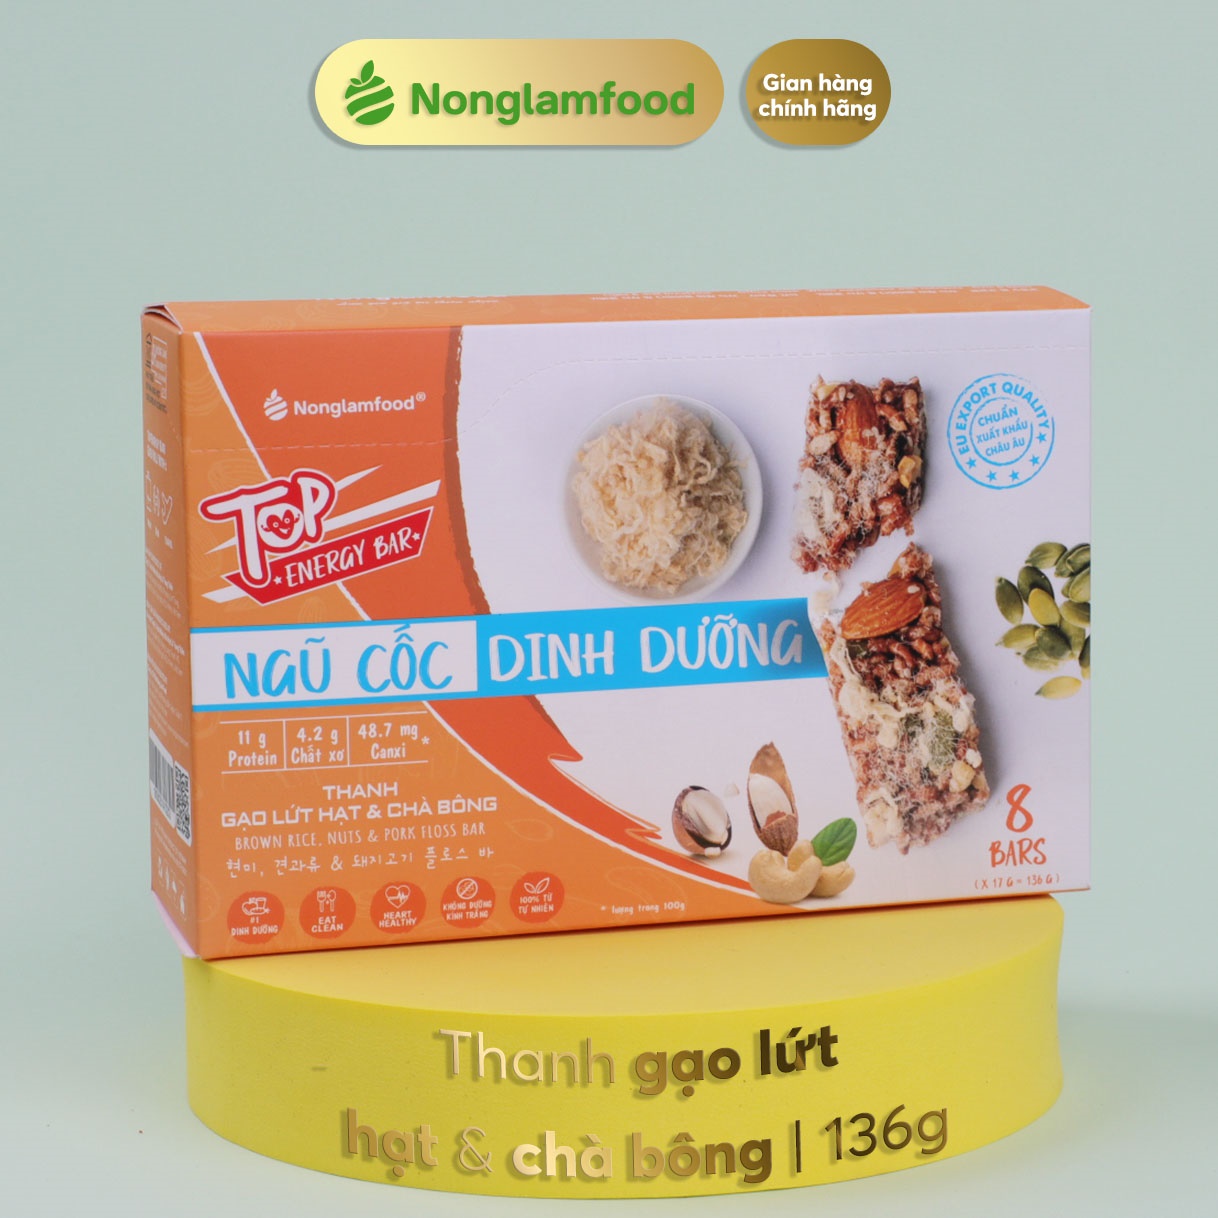 Thanh gạo lứt Hạt & Chà Bông Nonglamfood hộp 8 thanh 136g | Hỗ trợ ăn kiêng giảm cân, tập gym | Bữa ăn sáng thay thế dinh dưỡng | Bổ sung dưỡng chất